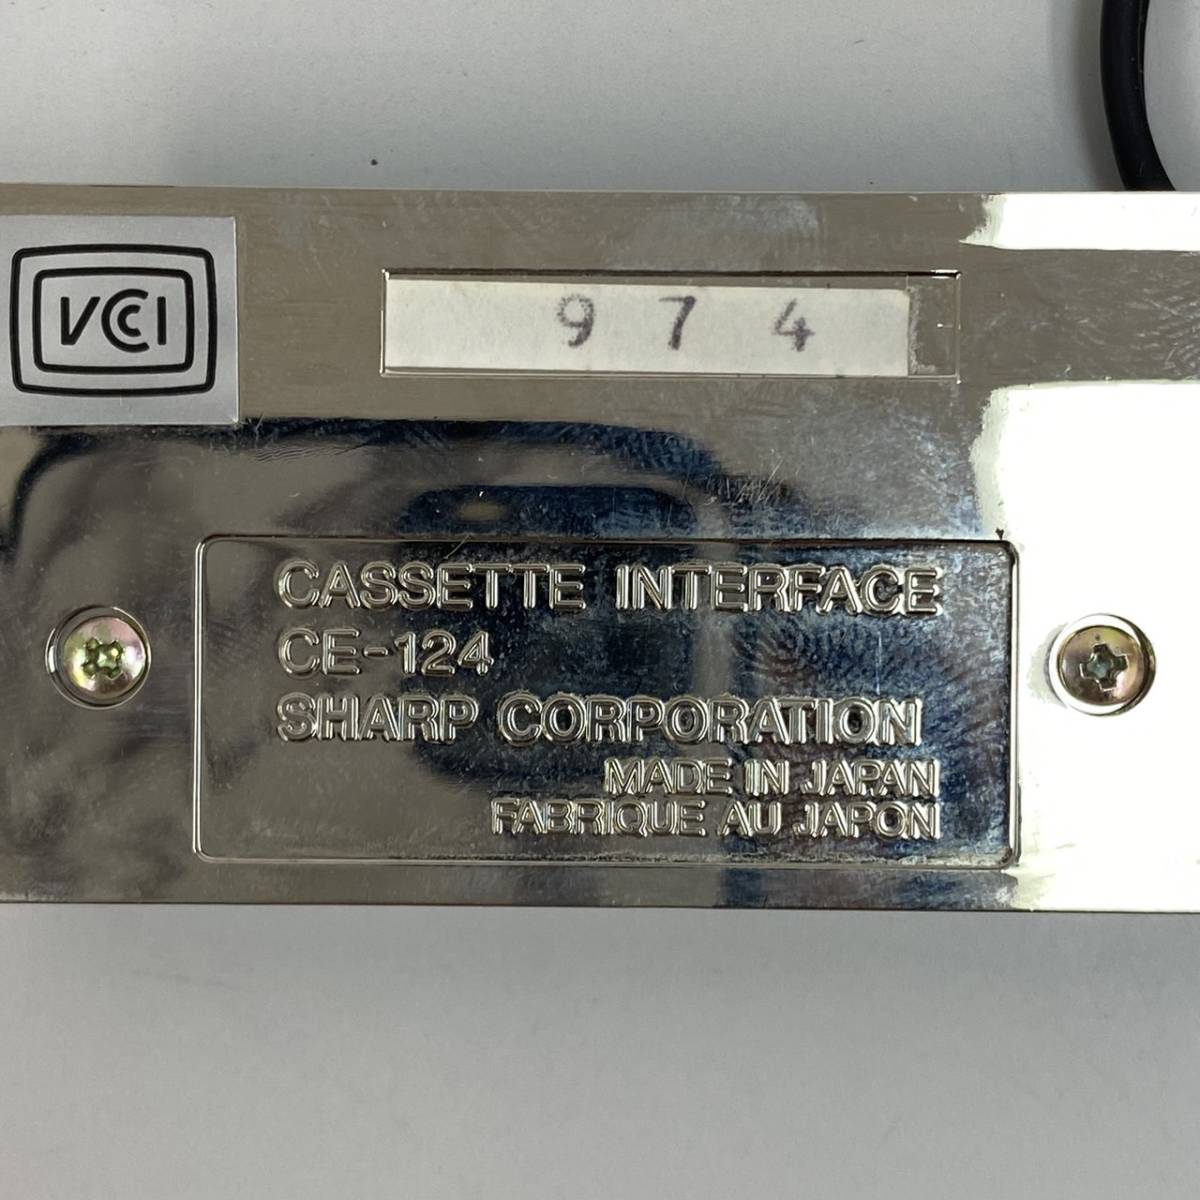 22L1128** SHARP sharp CE-124 карманный компьютер для кассета интерфейс CASSETTE INTERFACE работоспособность не проверялась **